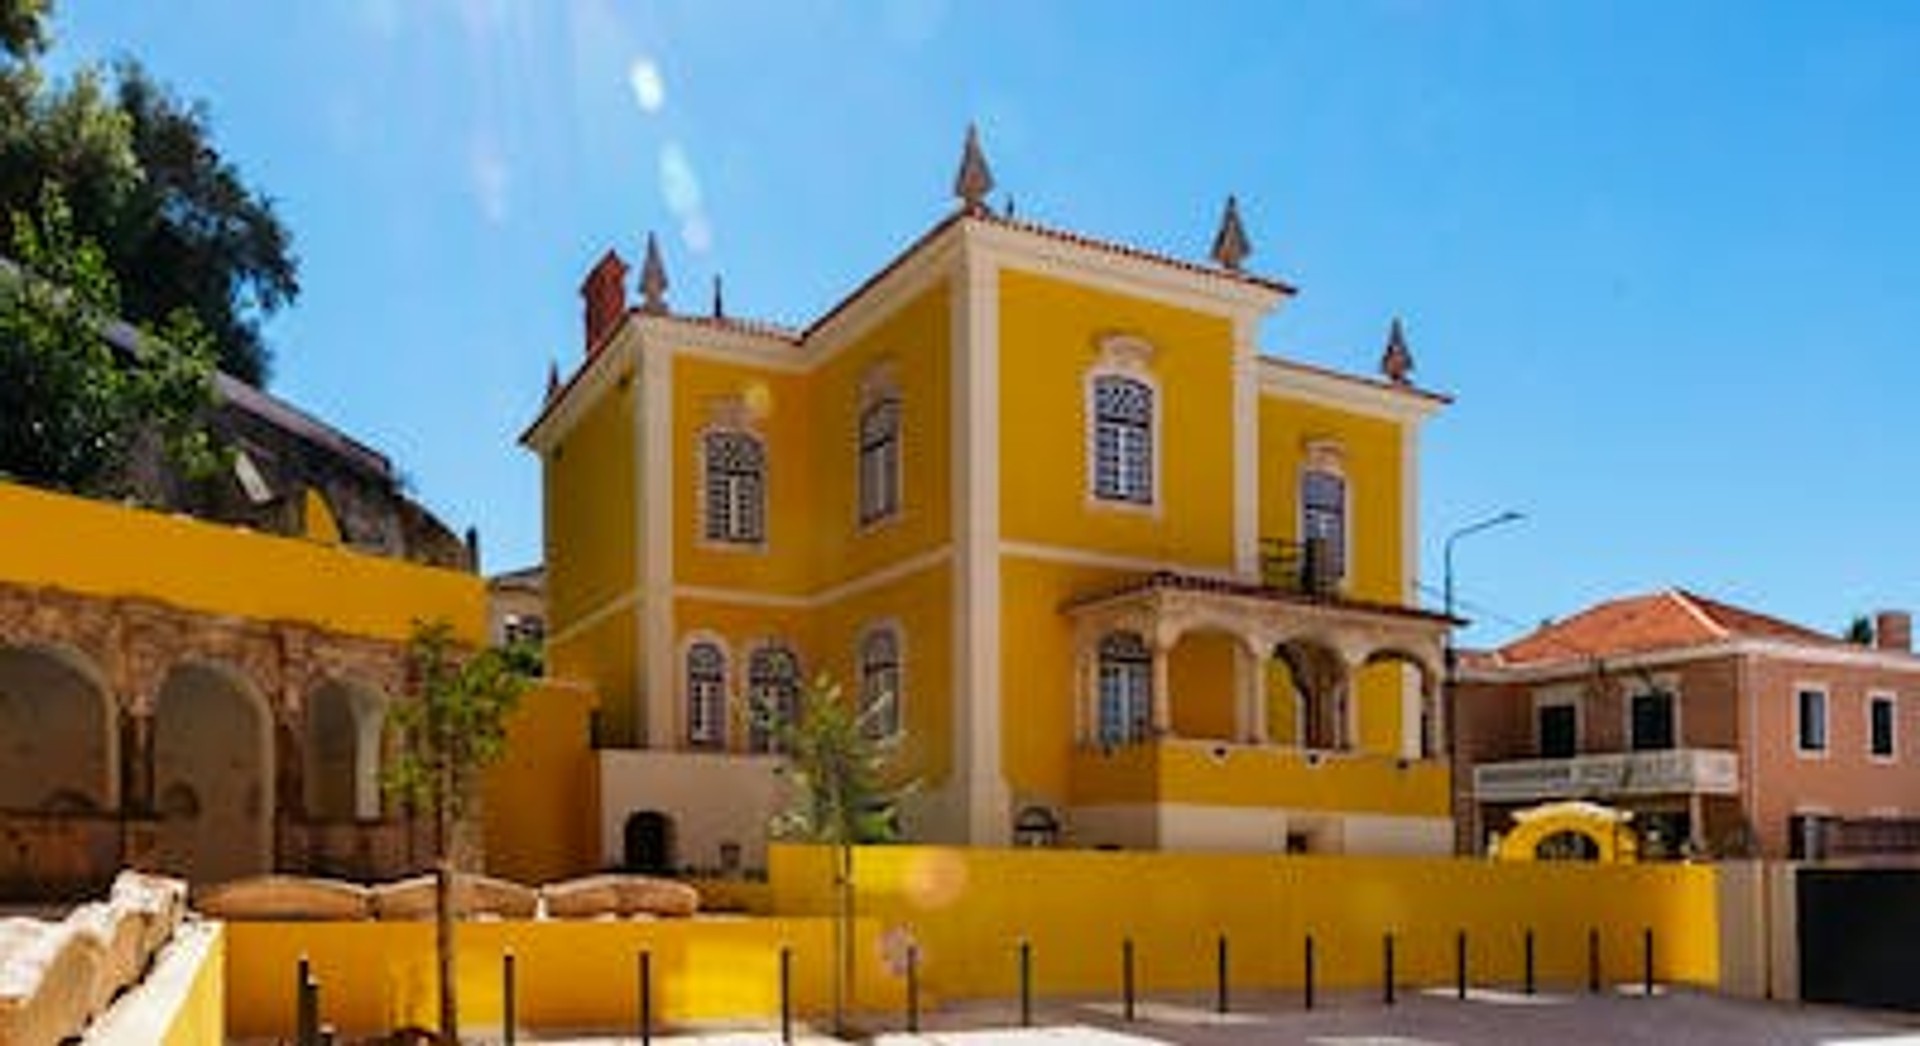 Habitación privada barata en Coimbra